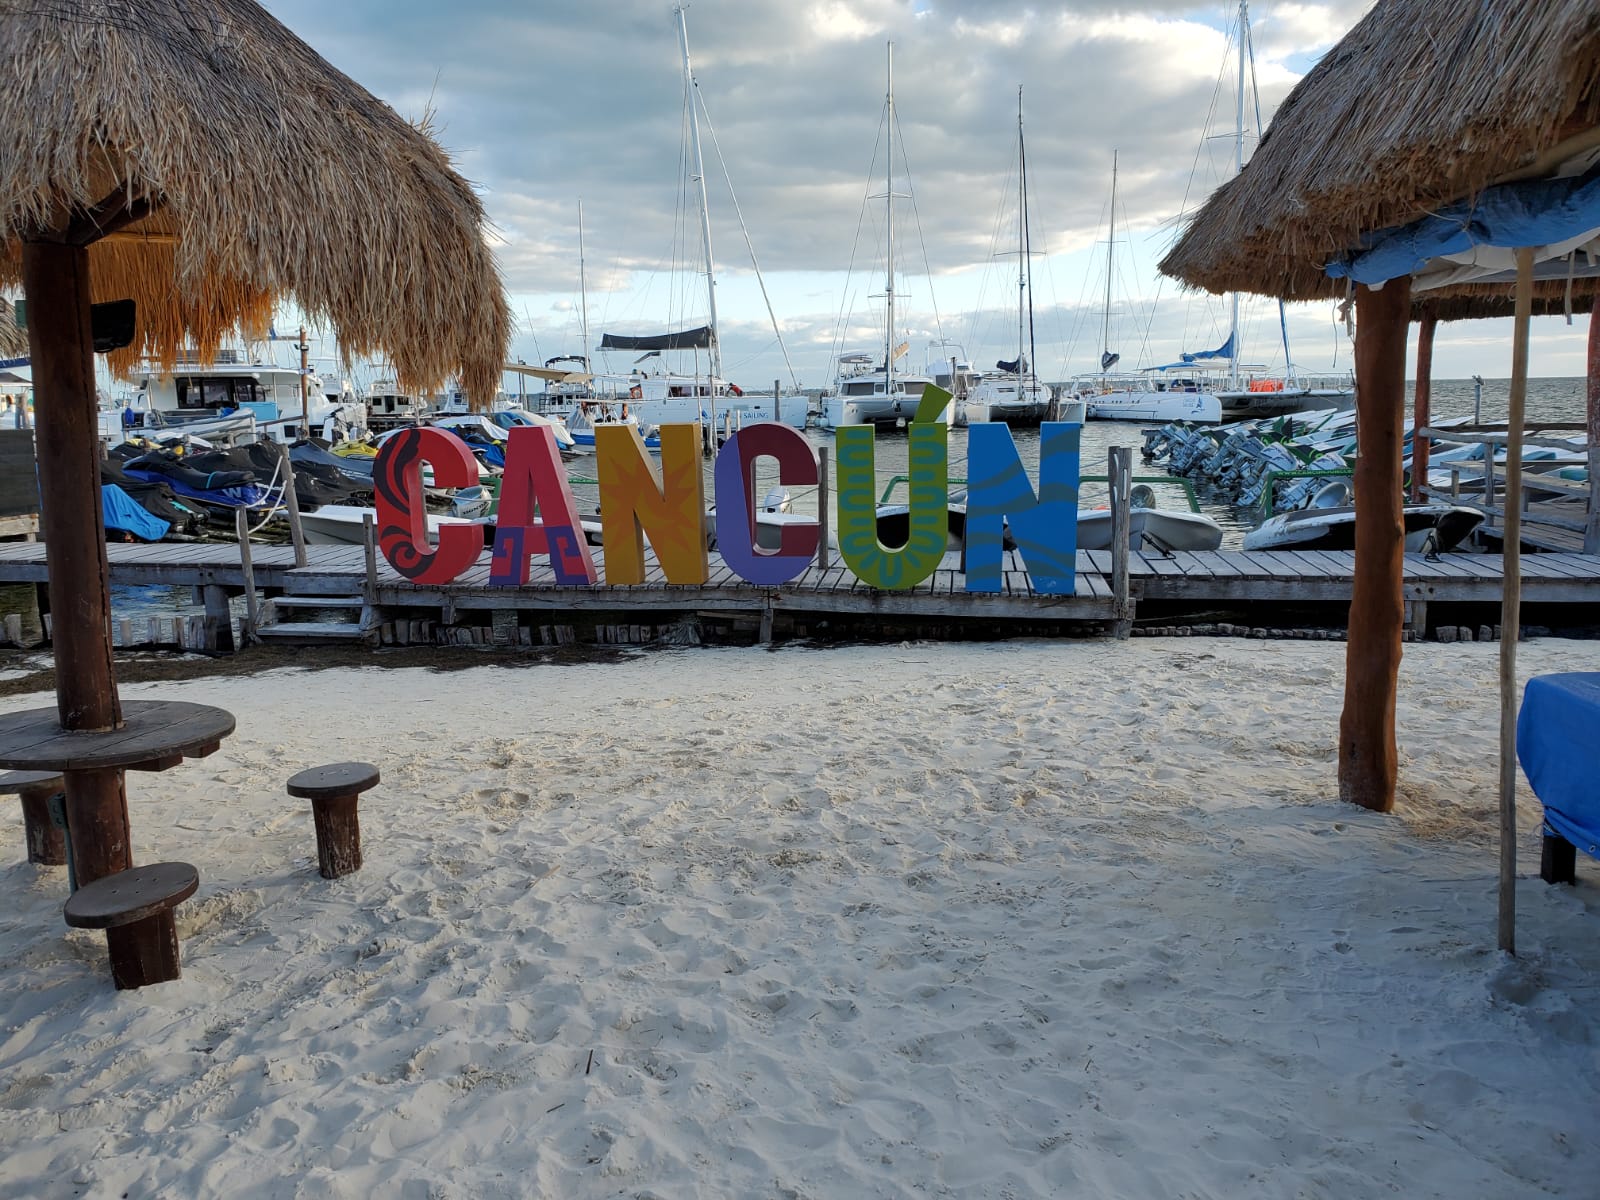 Temptation - Cancun, Mexico November 5